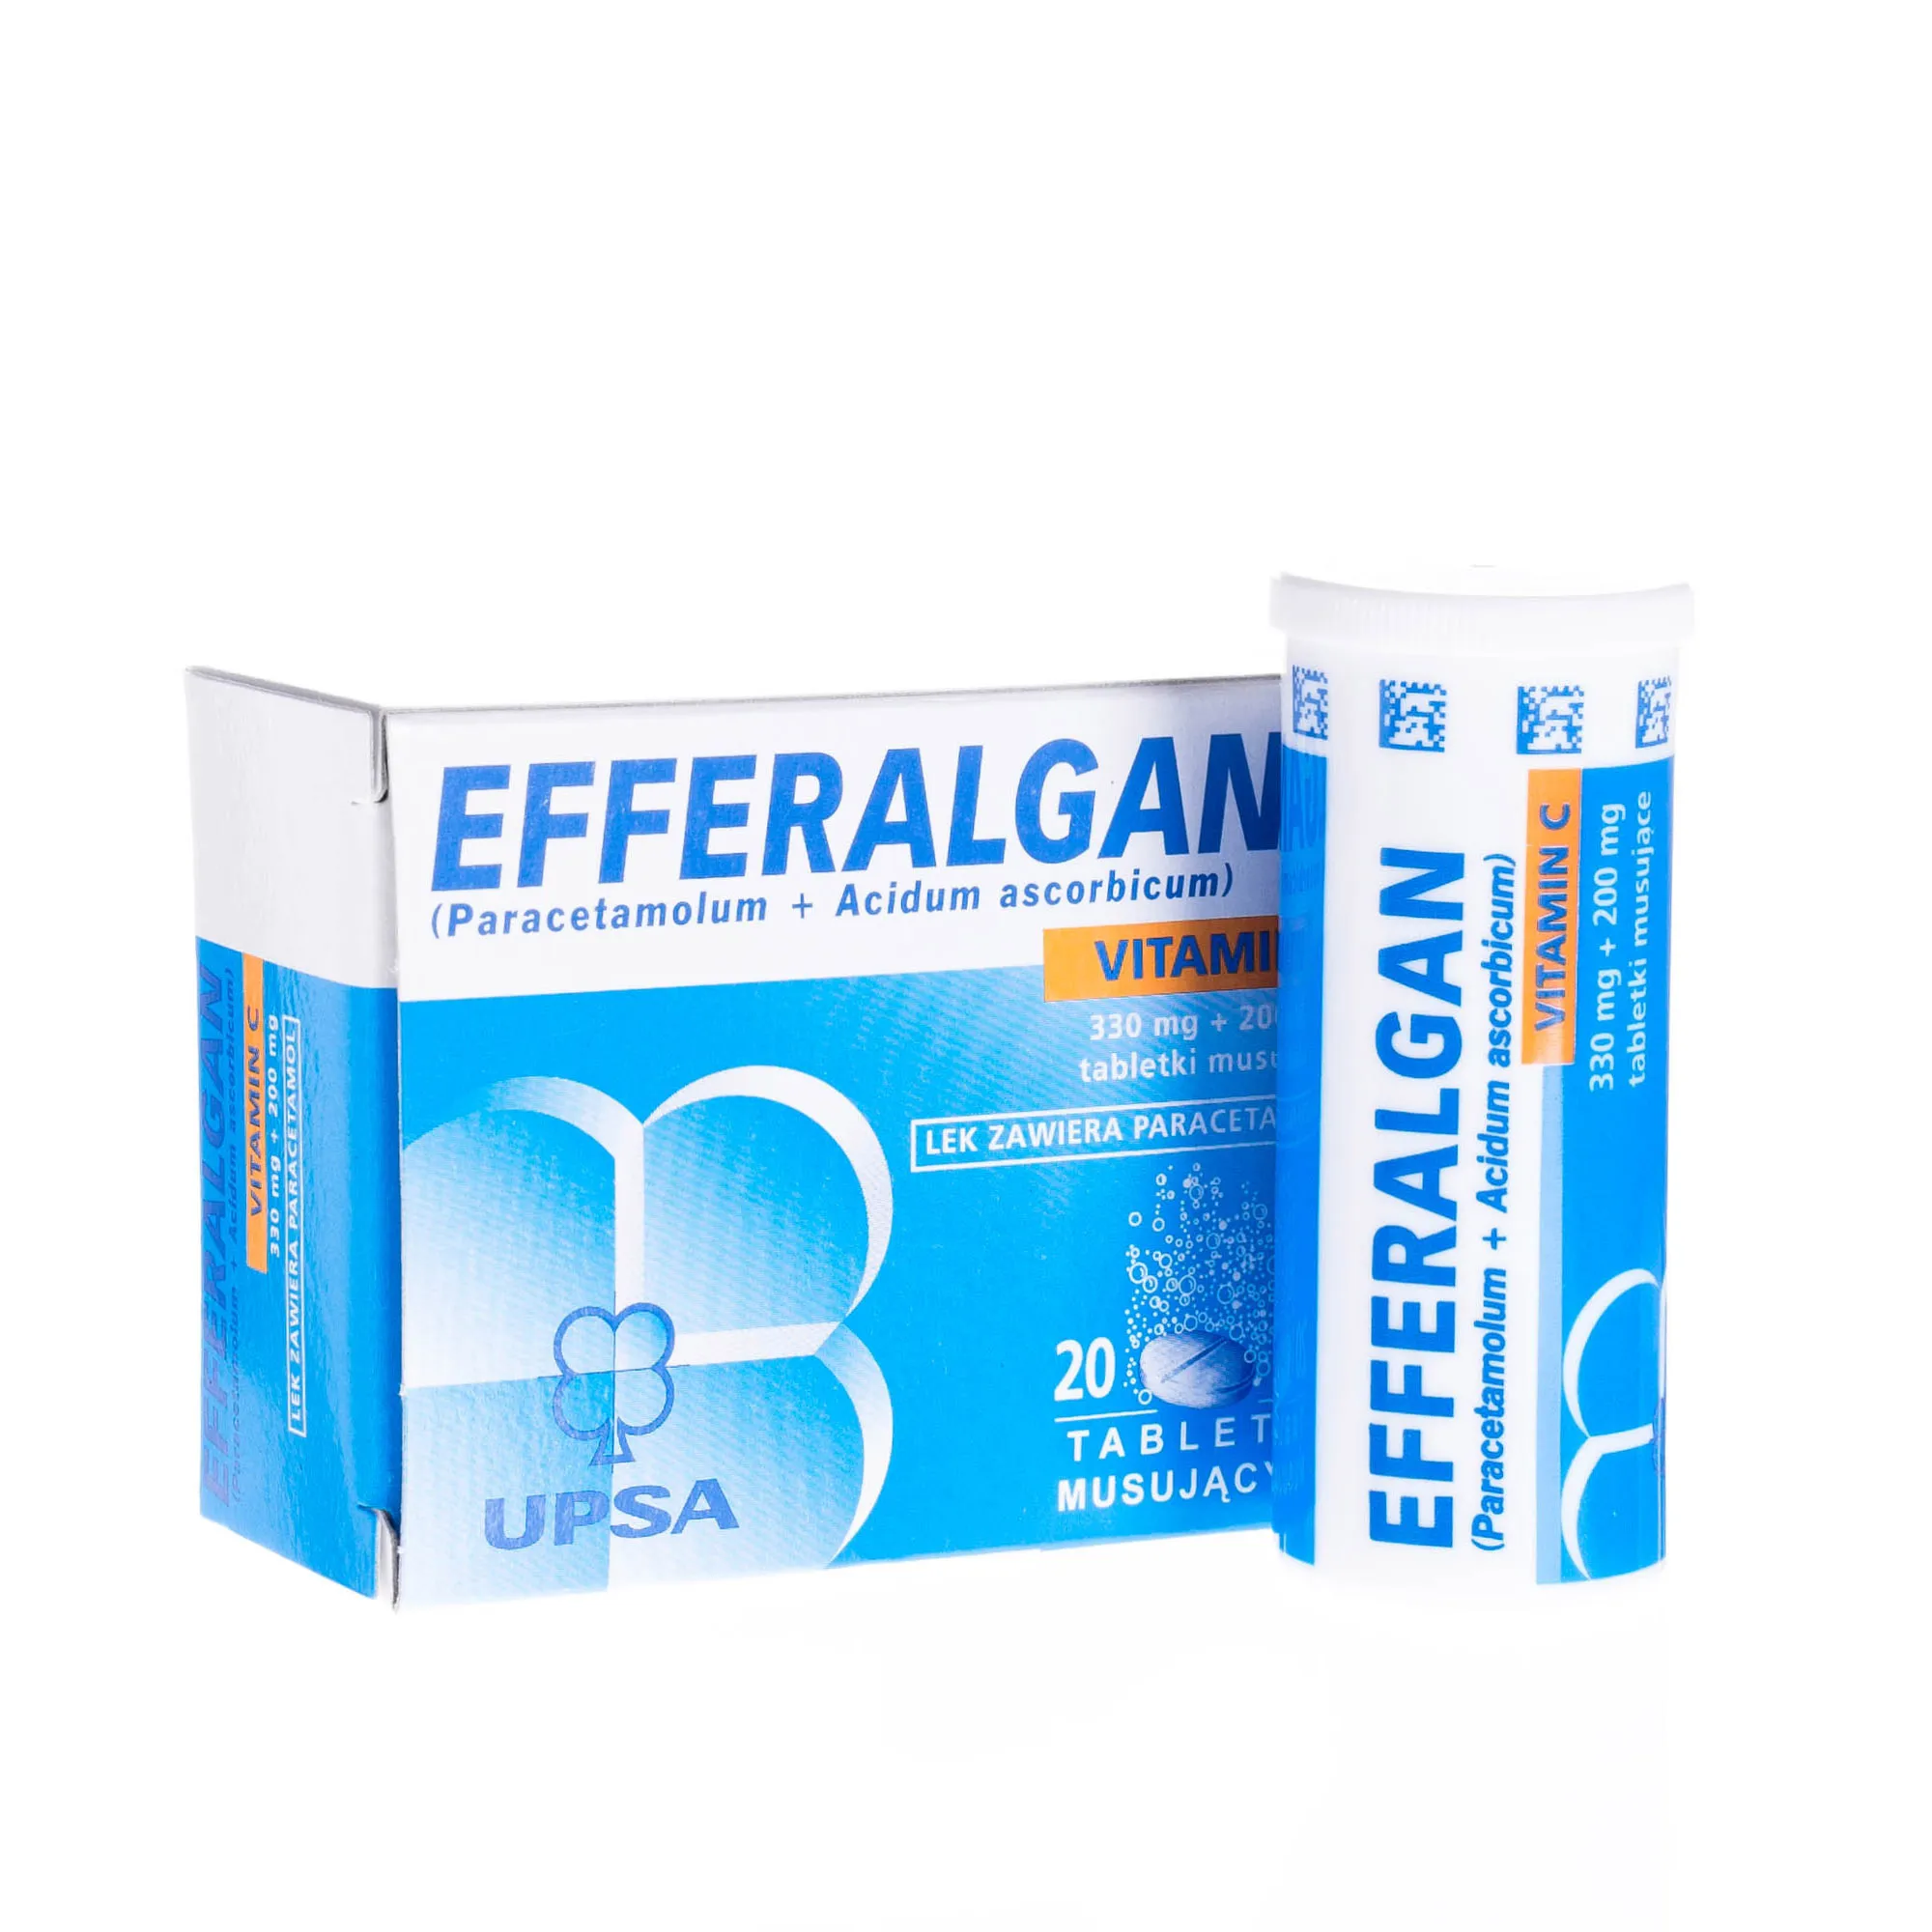 Efferalgan Vitamin C - lek o działaniu przeciwbólowym i przeciwgorączkowym, 20 tabletek musujących 